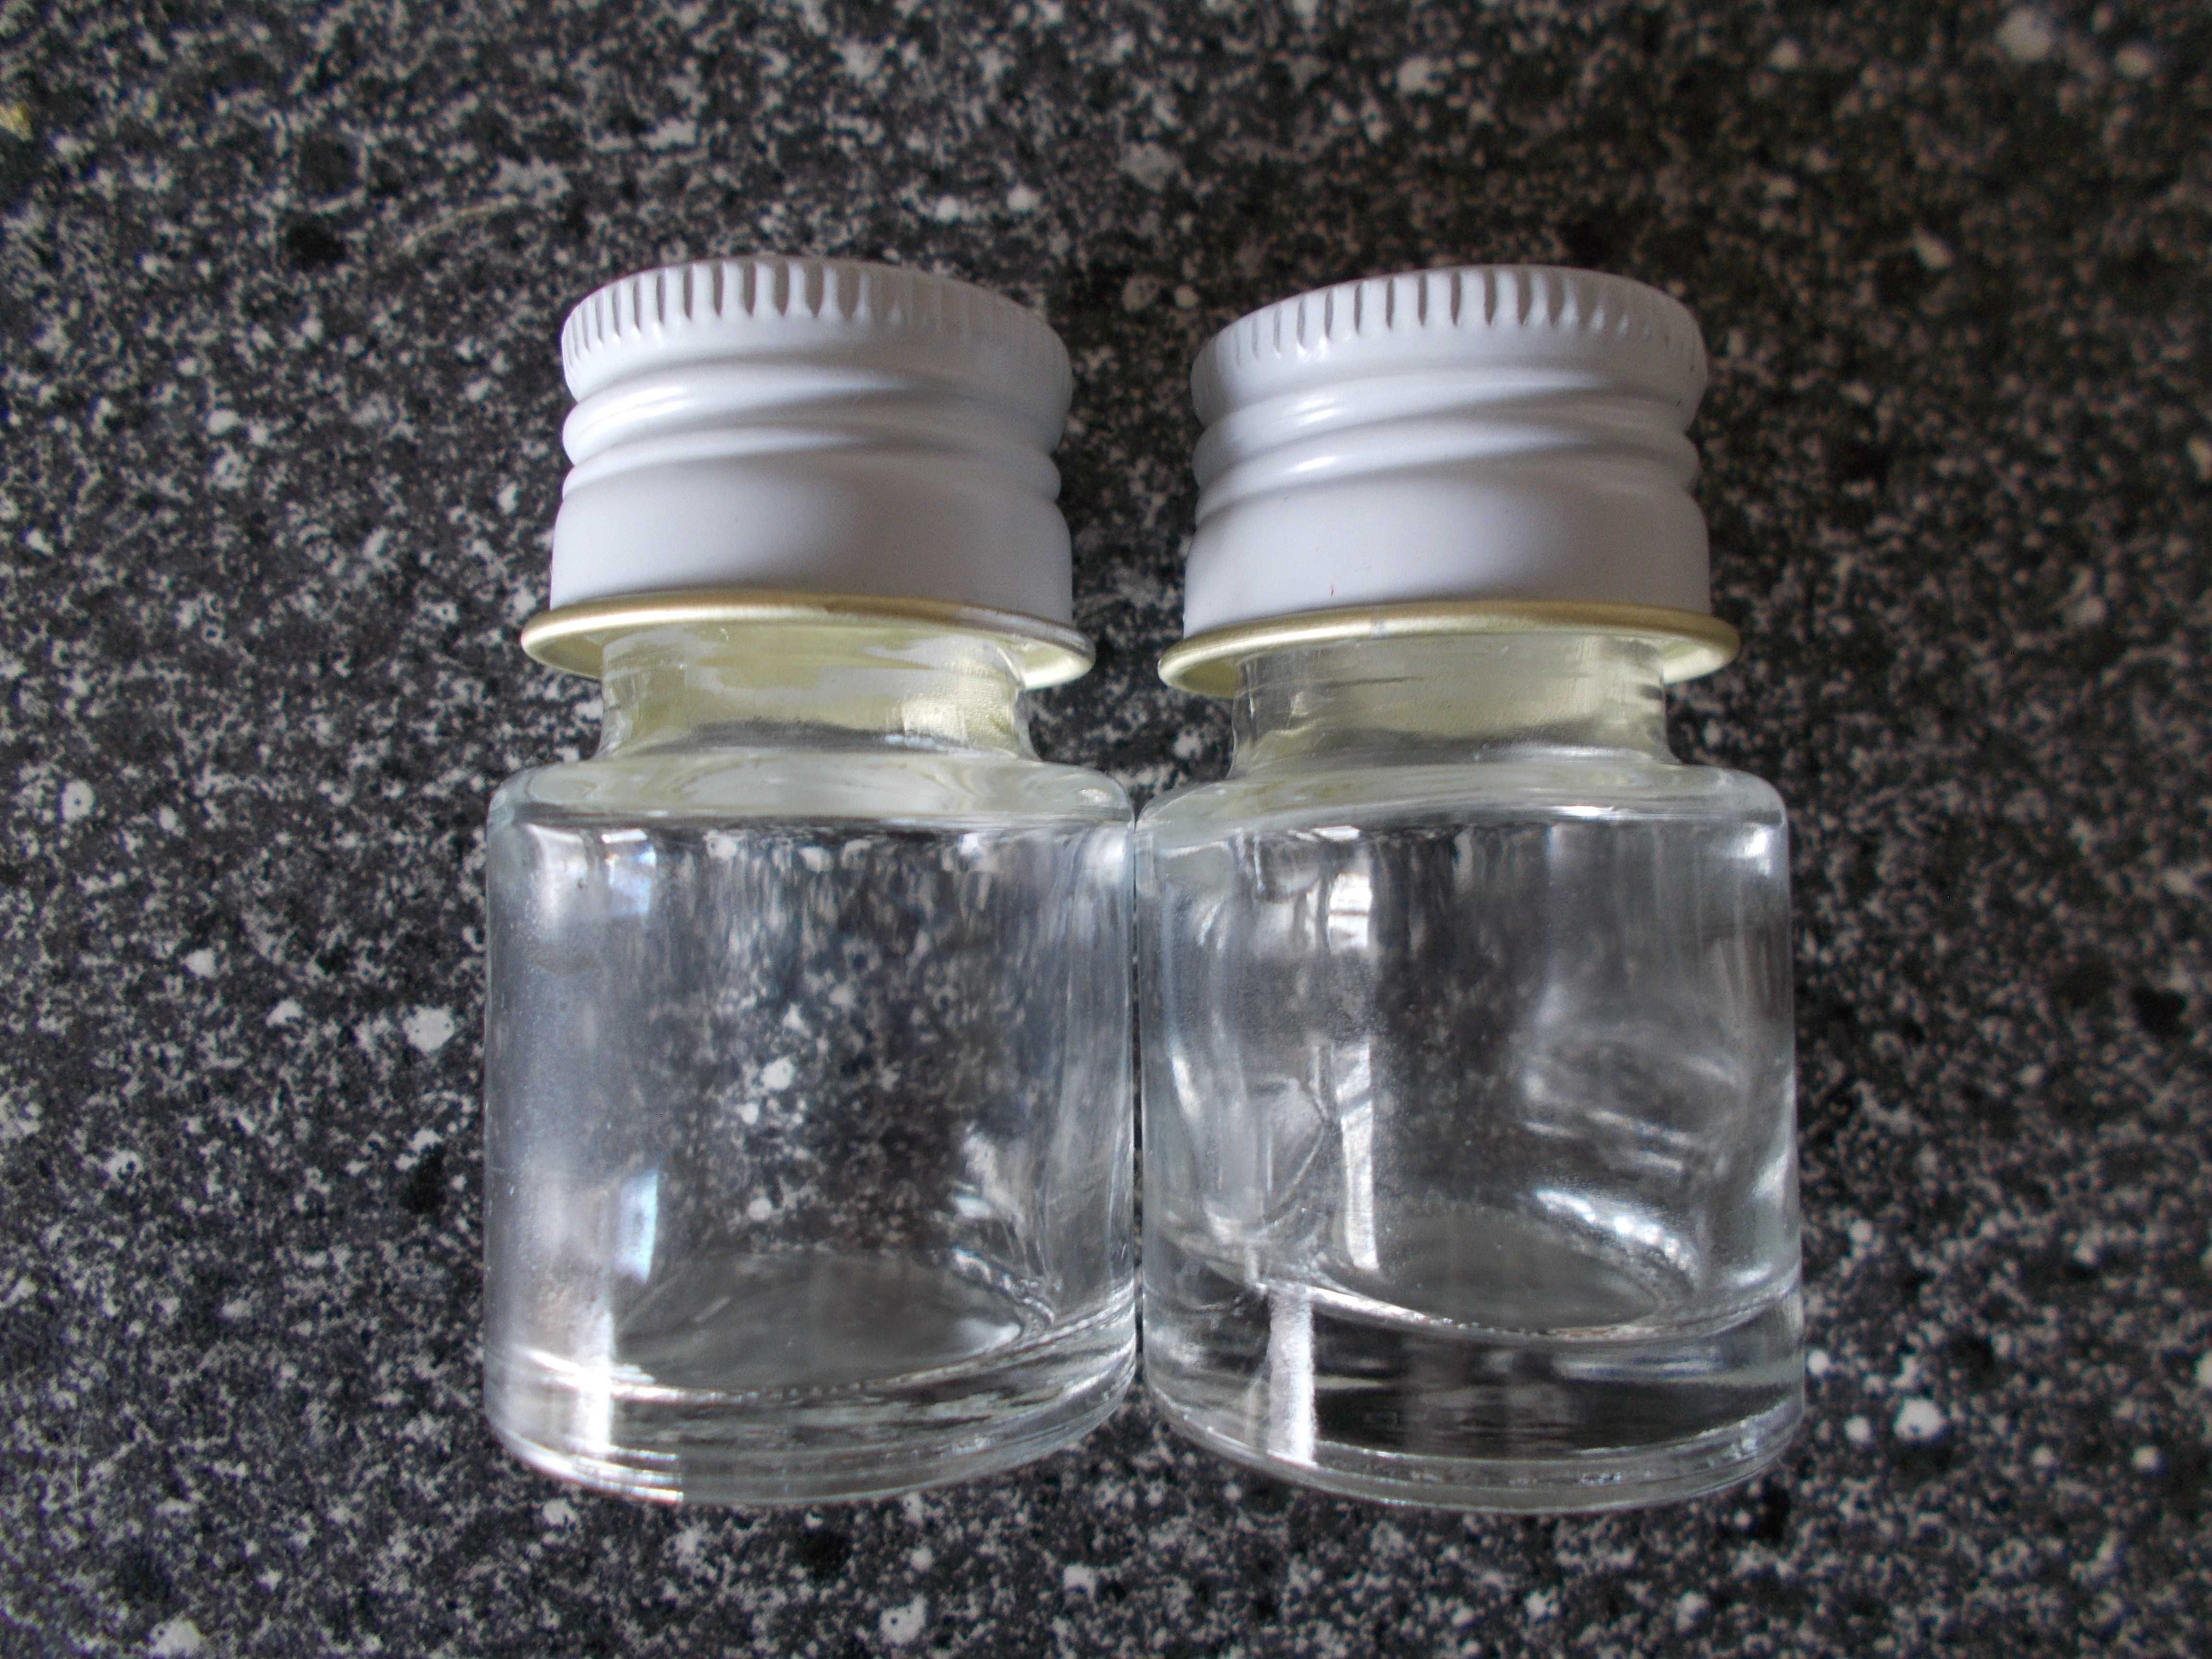 Szklane słoiczki słoik z metalową nakrętką 10 ml